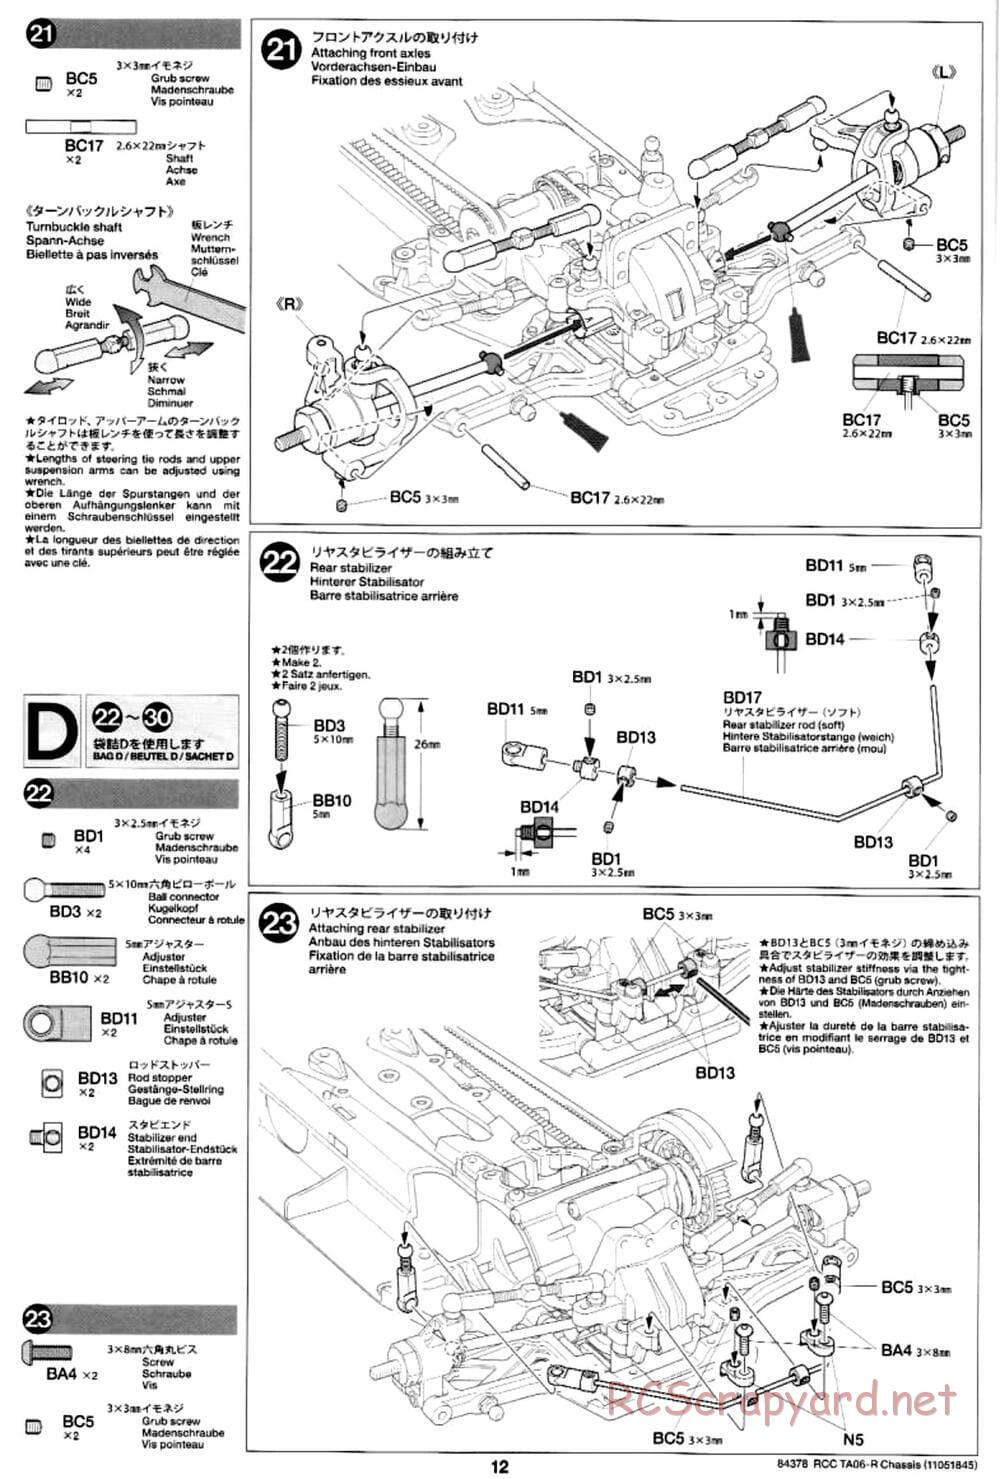 Tamiya - TA06-R Chassis - Manual - Page 12